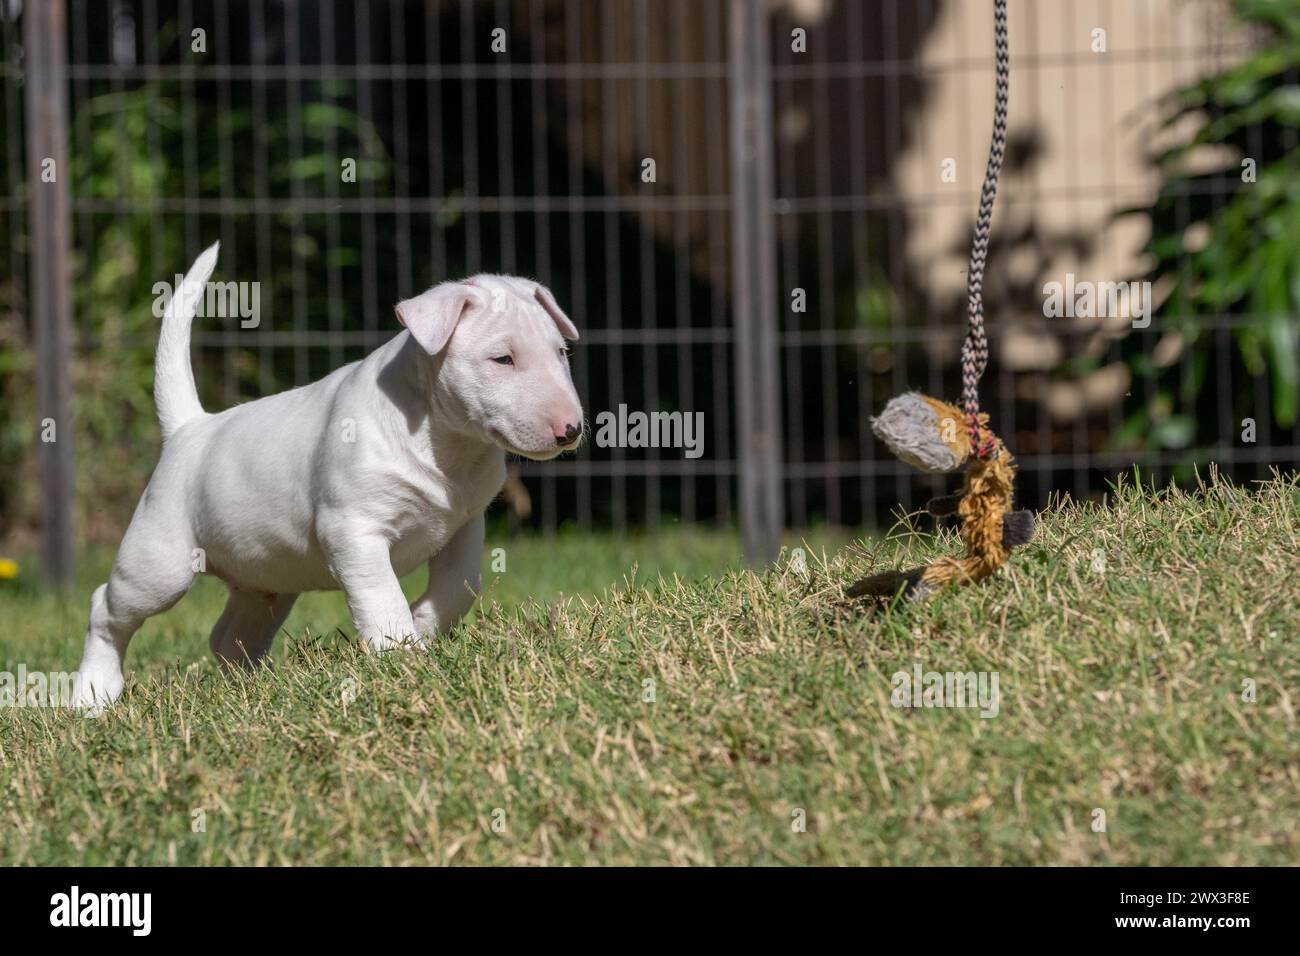 Cucciolo Bull terrier che gioca con un giocattolo su una corda nel cortile Foto Stock